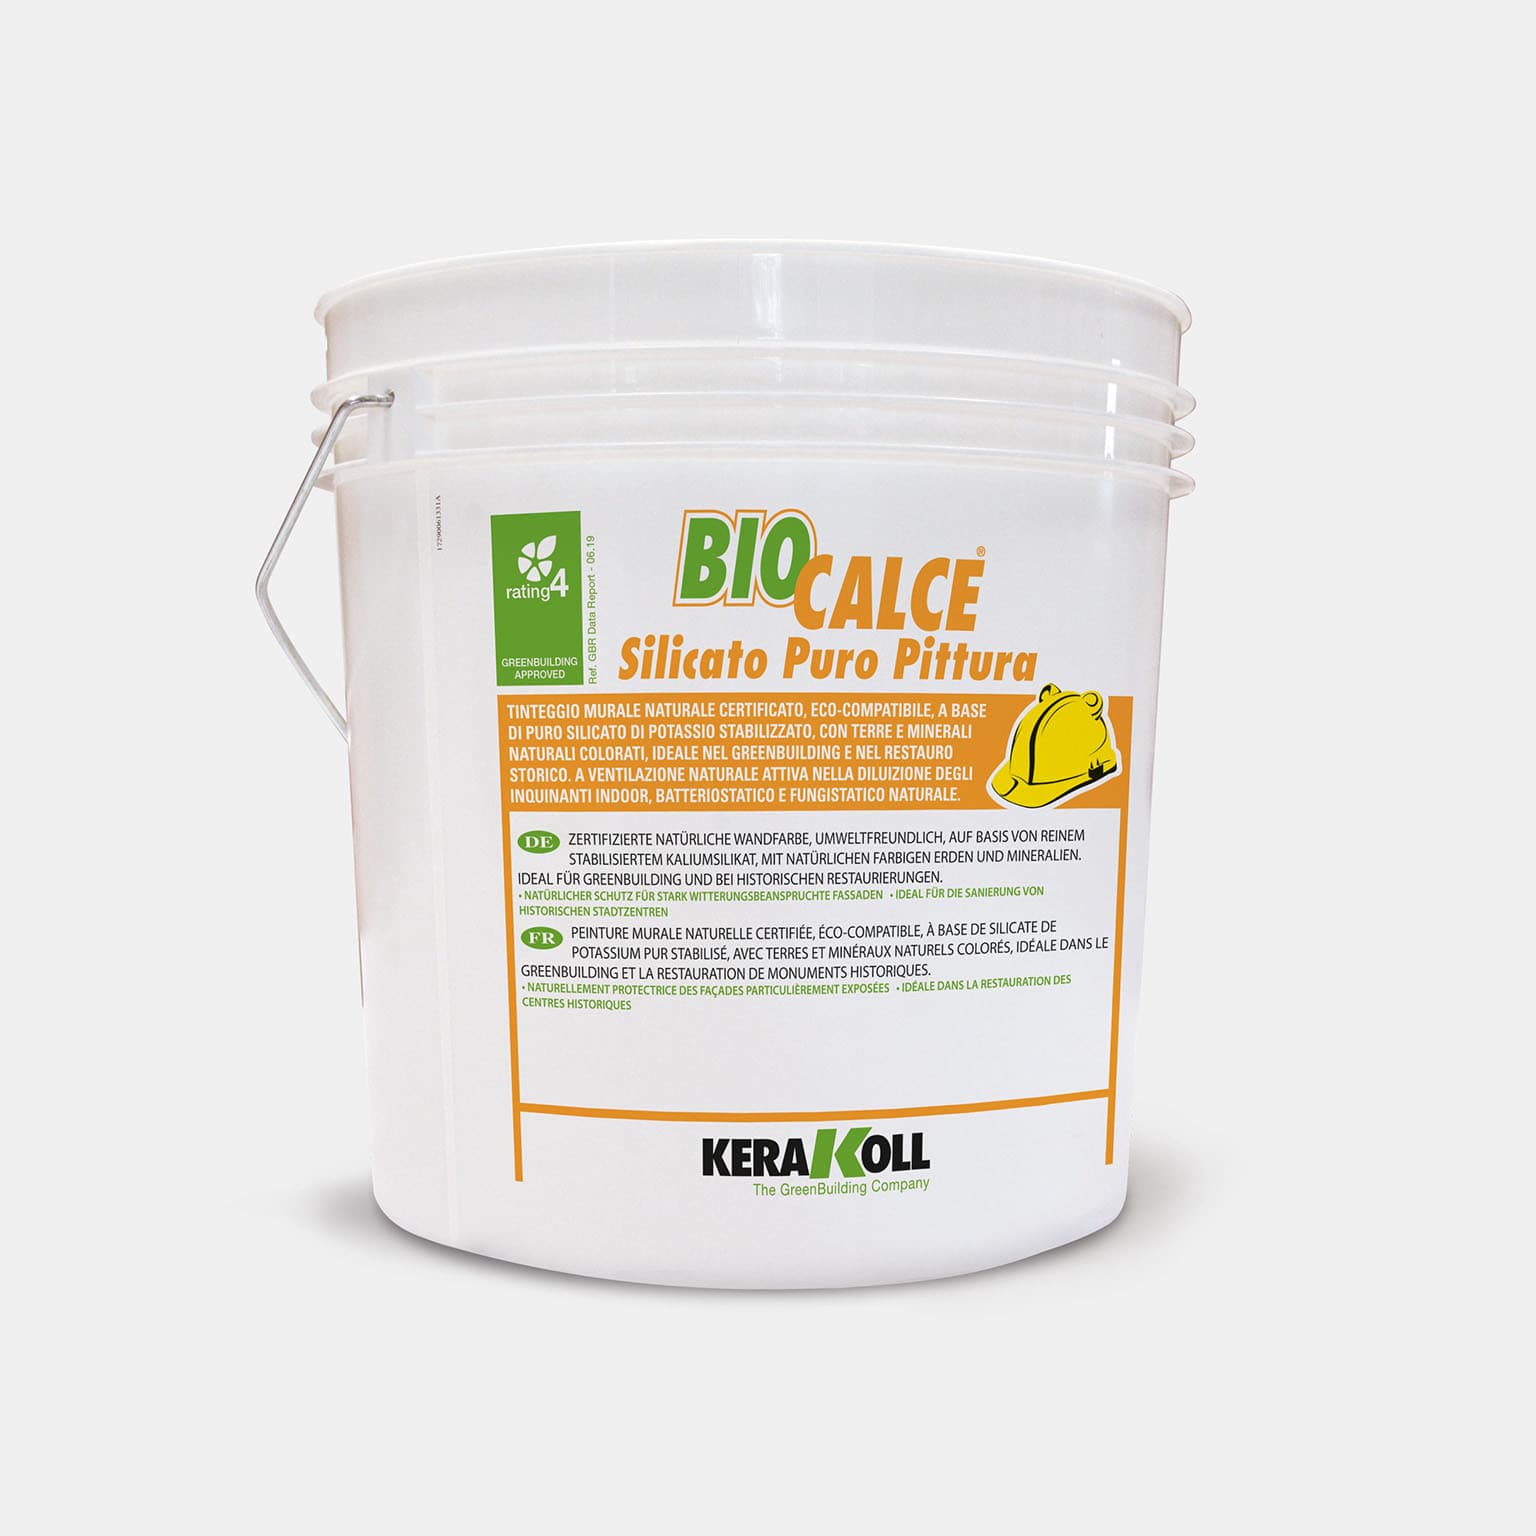 A Kerakoll Biocalce Silicato Puro Pittura természetes, lélegző színes festék vakolatok dekorációjára és restauráláshoz, valamint általában használható minden hidraulikus kötőanyag alapú ásványi aljzaton.